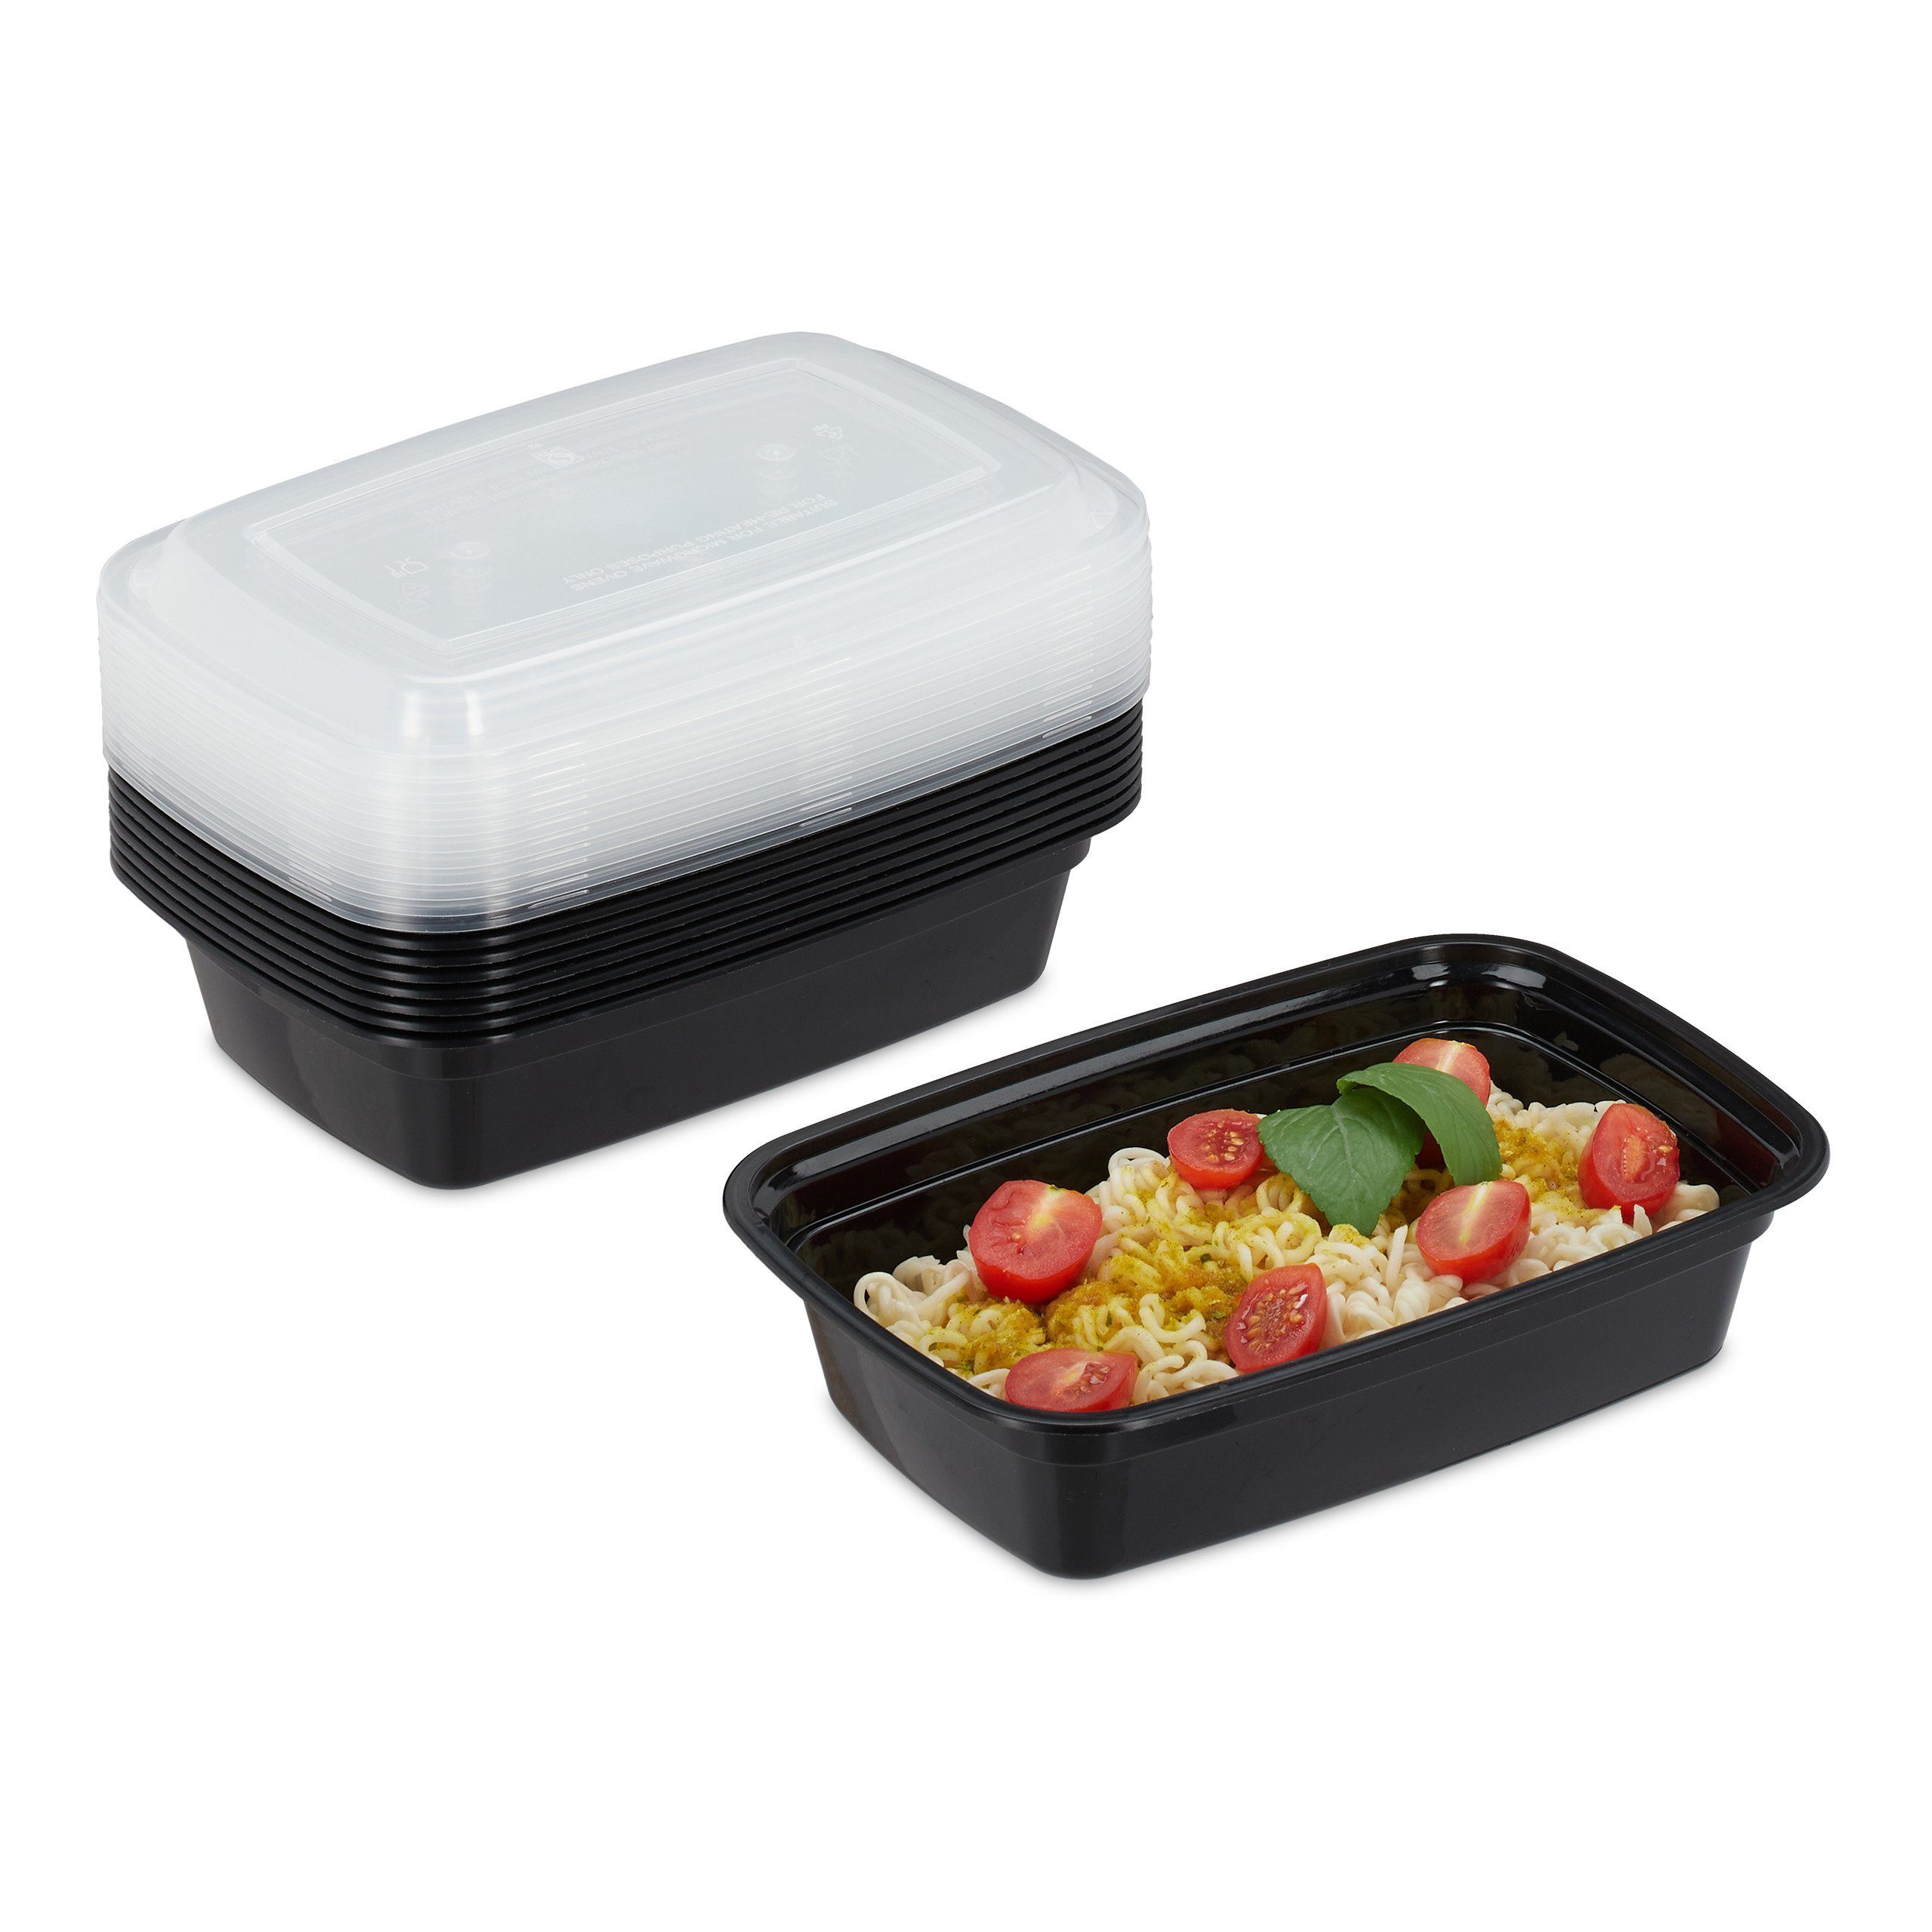 relaxdays Lunchbox 10er Set Meal Prep Одежда и товары для бокса 1 Fach, Kunststoff